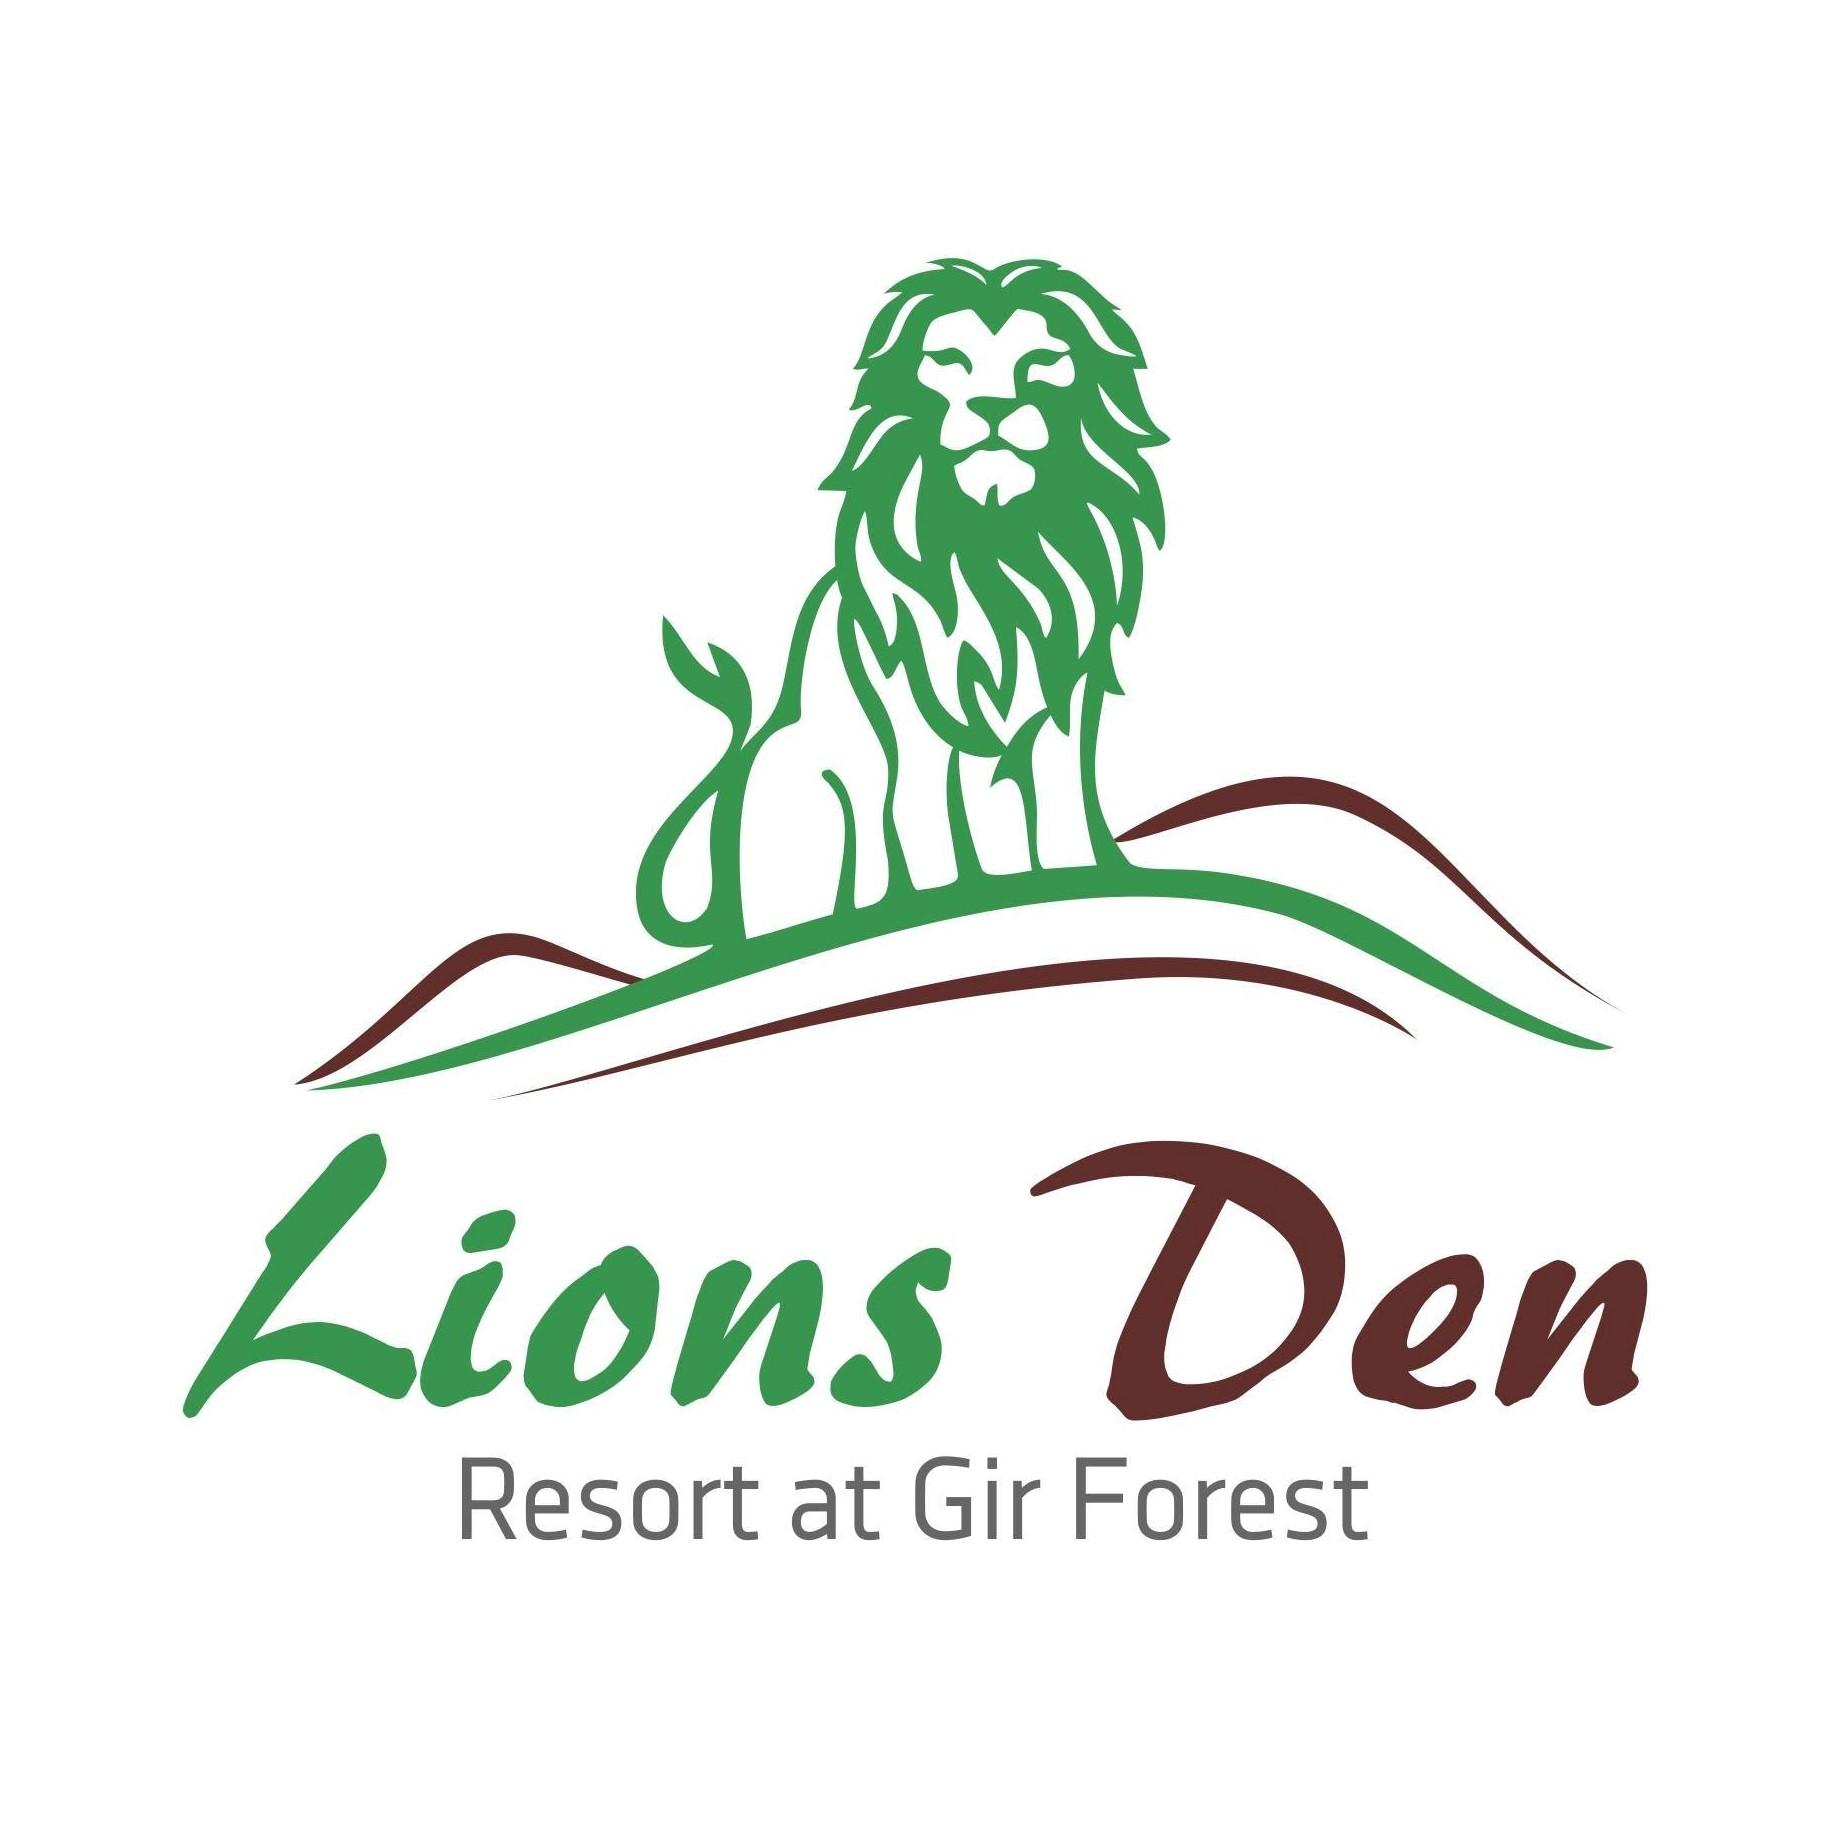 The lion's den - Sasan Gir